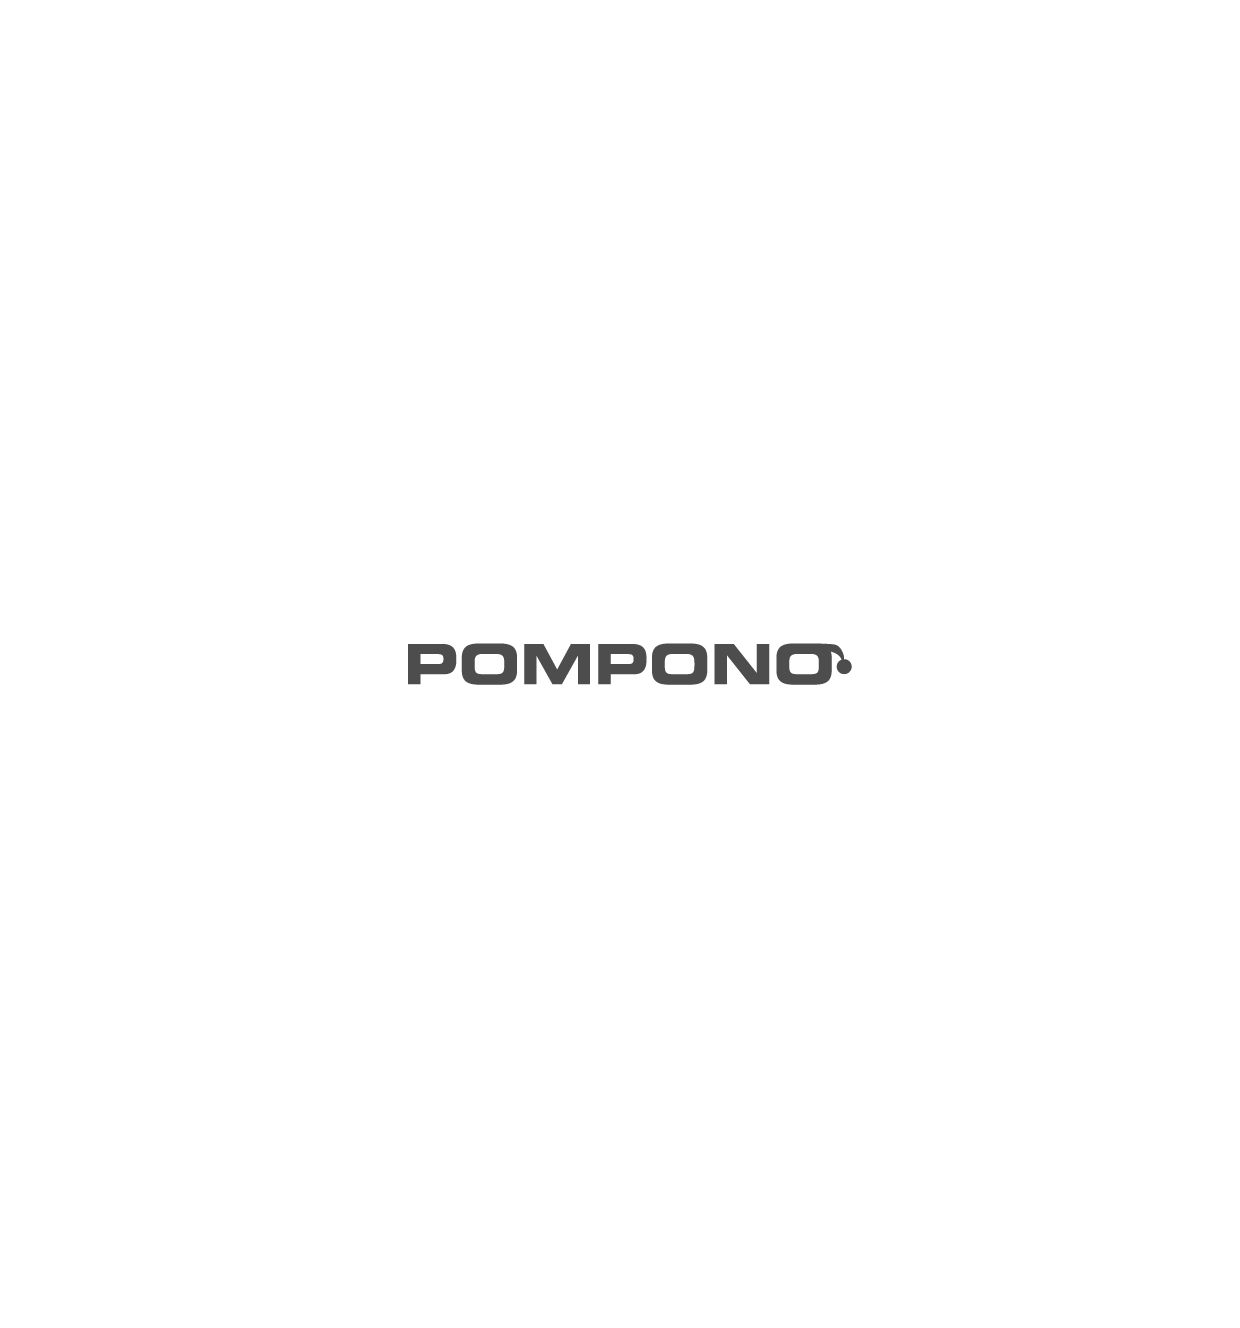 Логотип для шапок Pompono - дизайнер ndz_studio